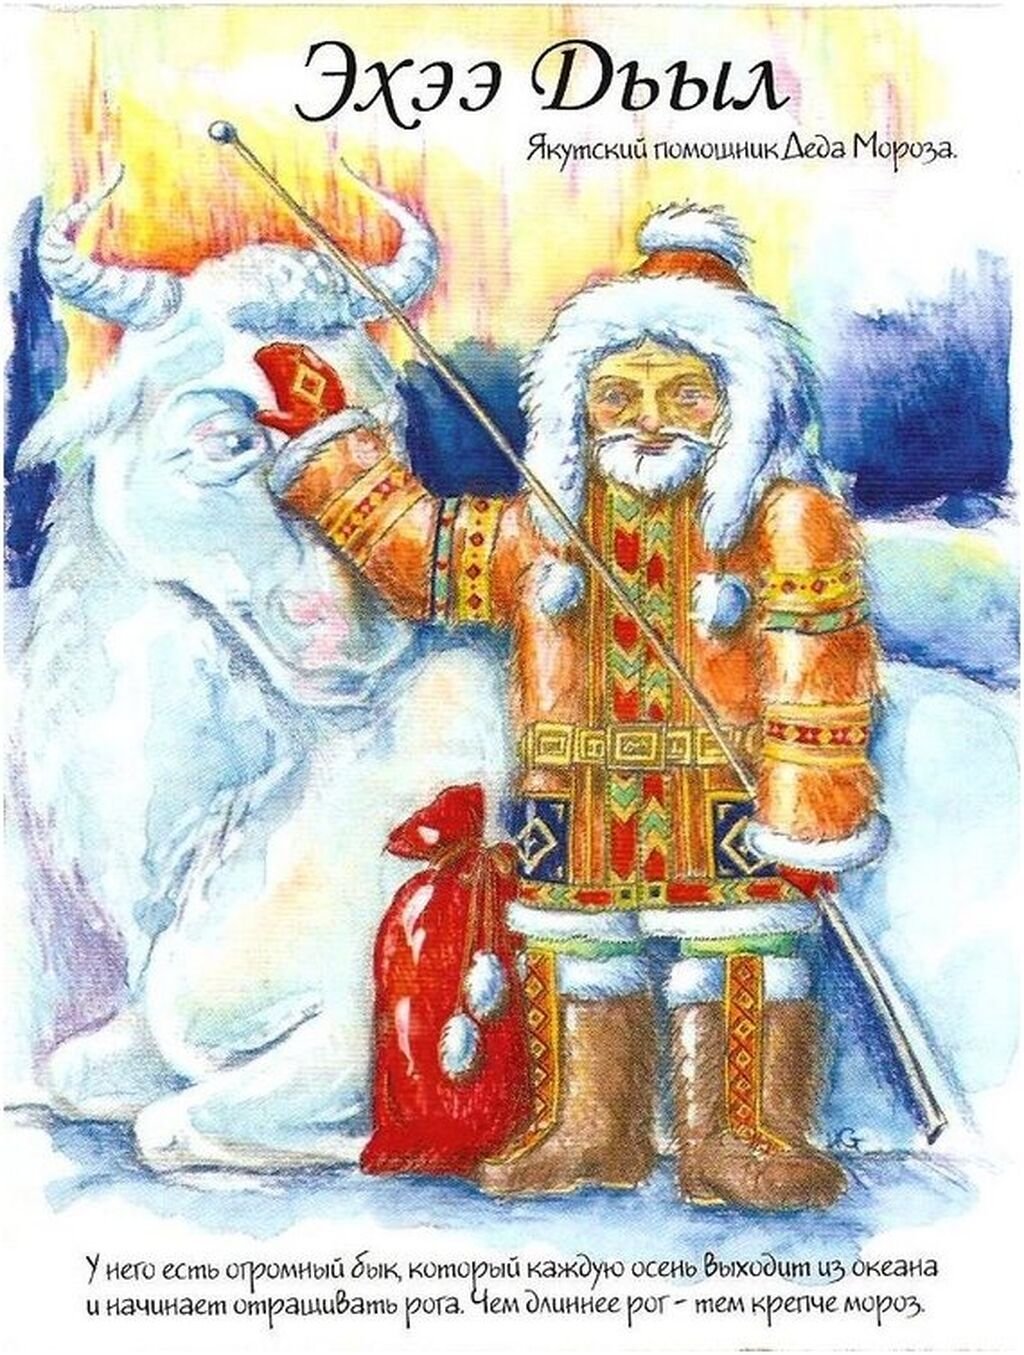 Деды морозы разных городов. Эхээ дьыл Якутский дед Мороз. Изображения дедов Морозов разных стран. Да д Мороз разный стран.